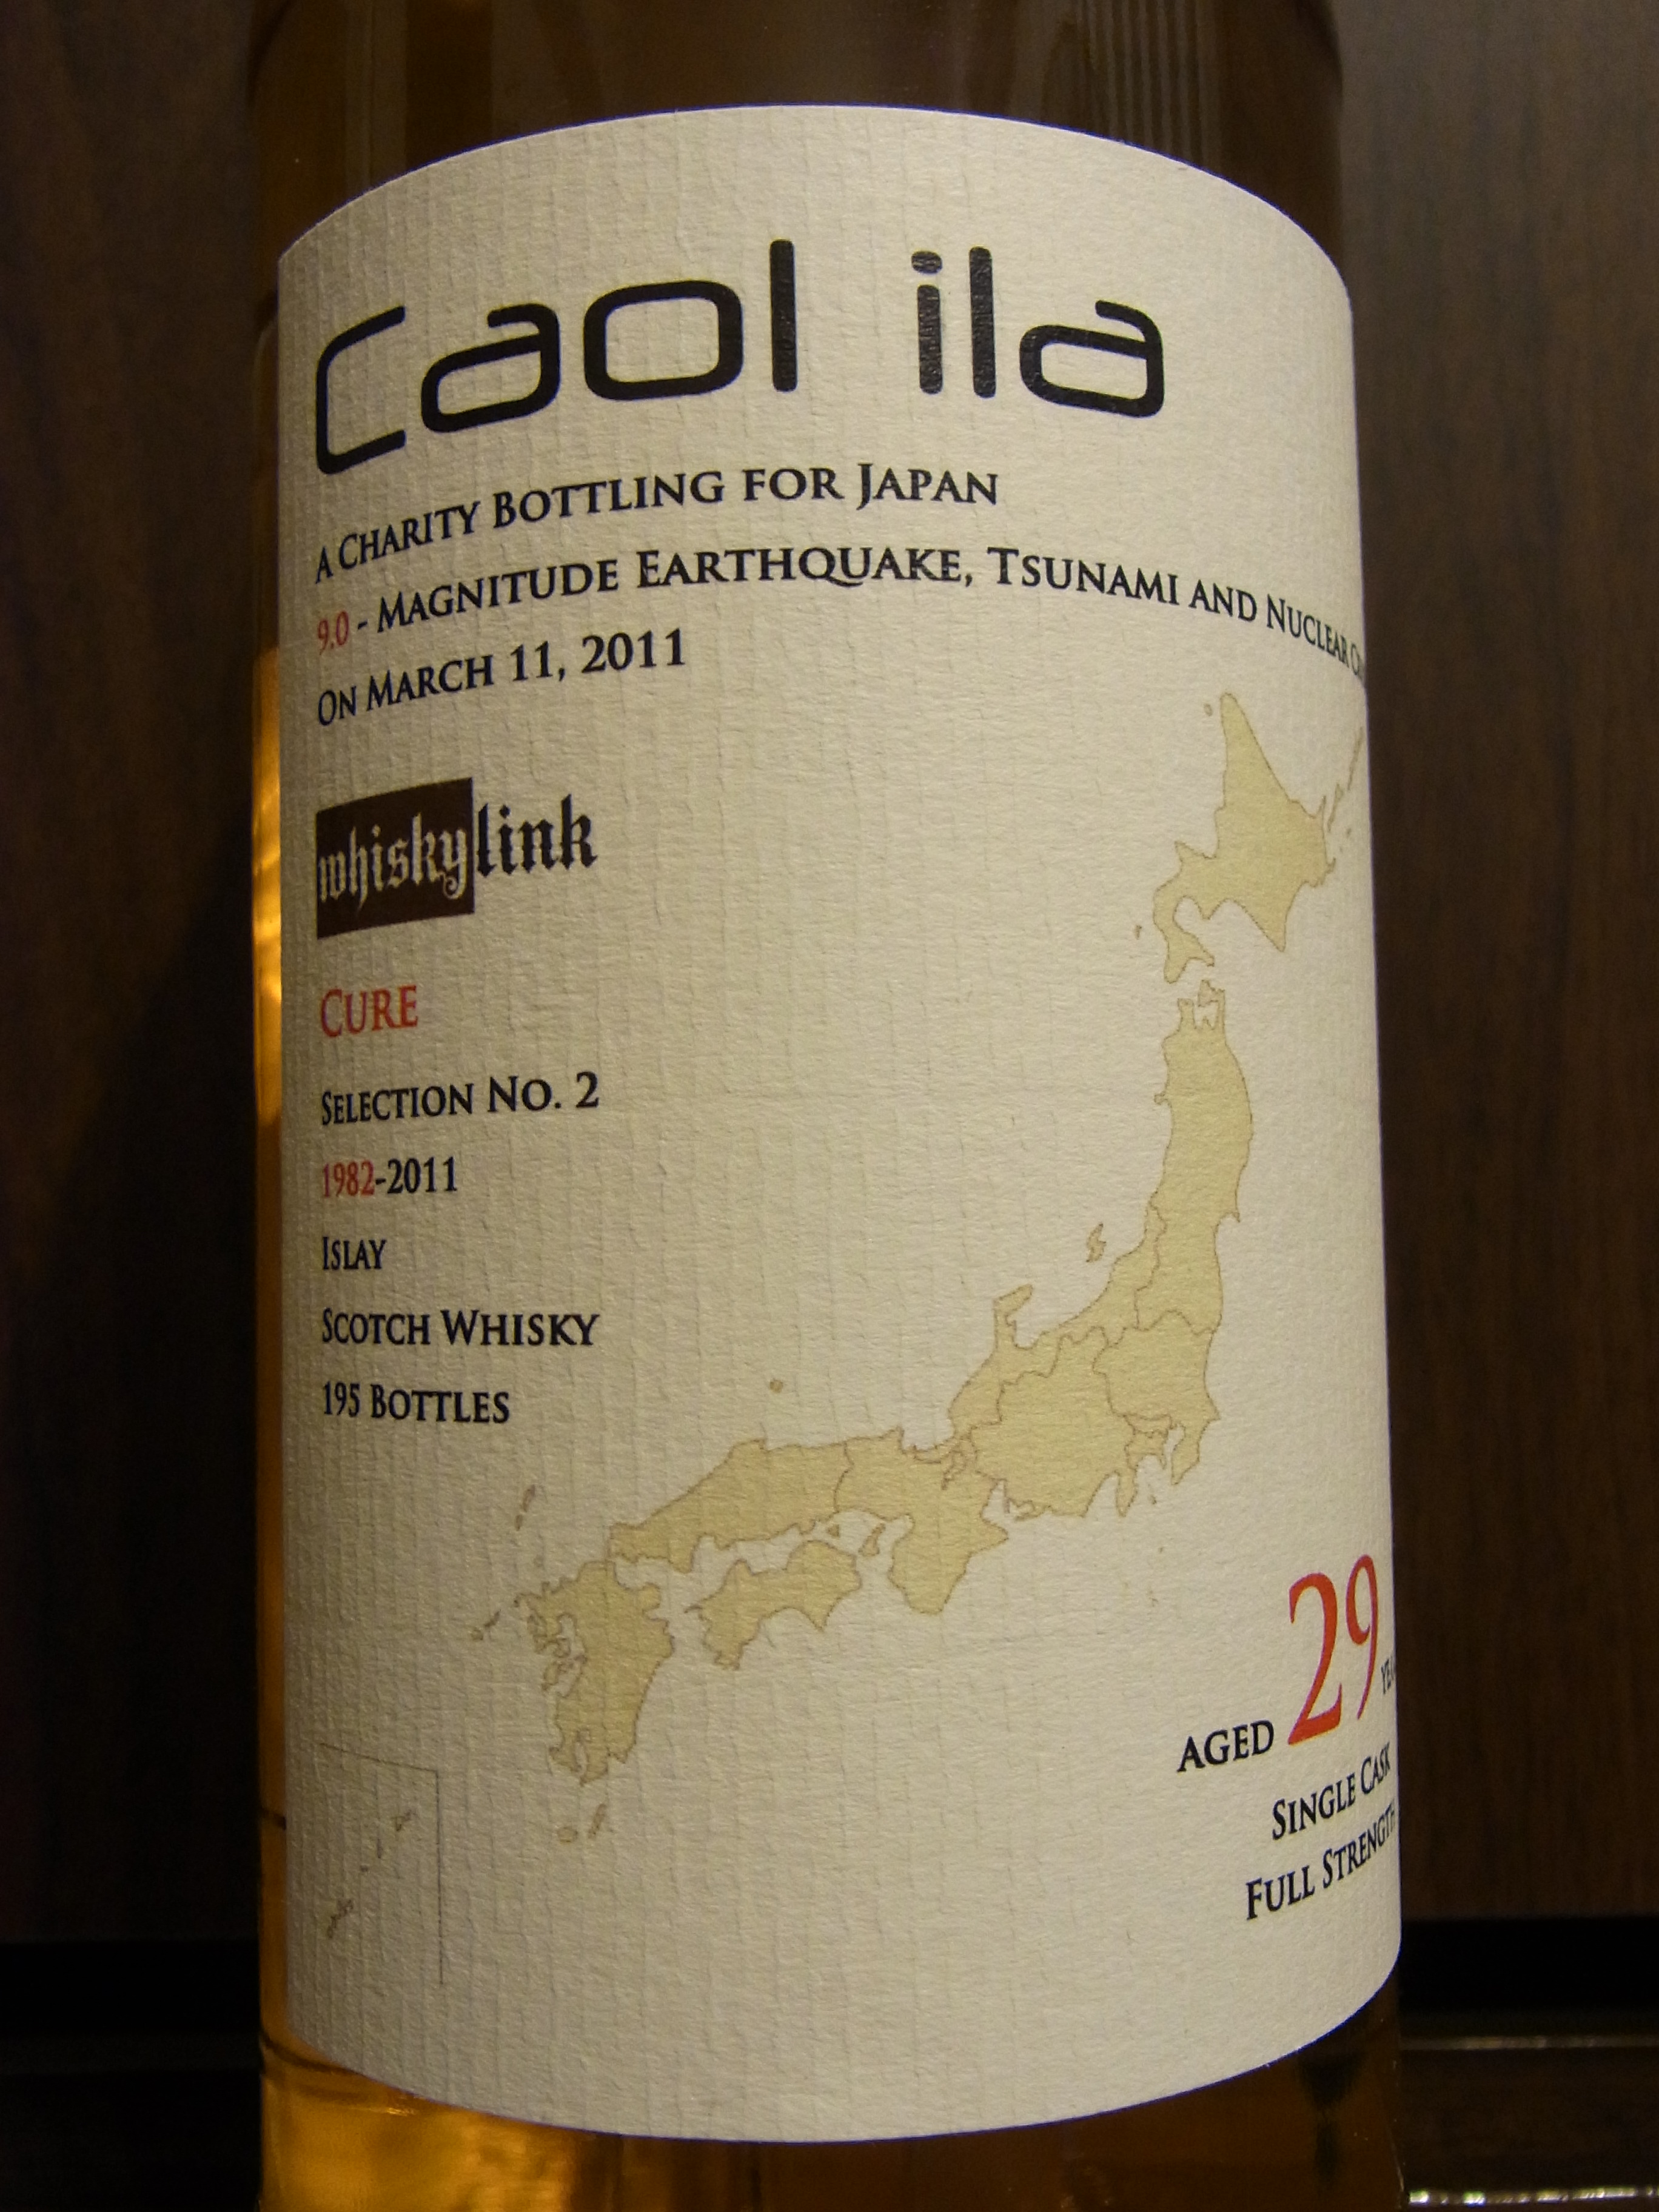 カリラ CAOL ILA 1982-2011 29yo whiskylink “Cure” selection No.2 53.8%